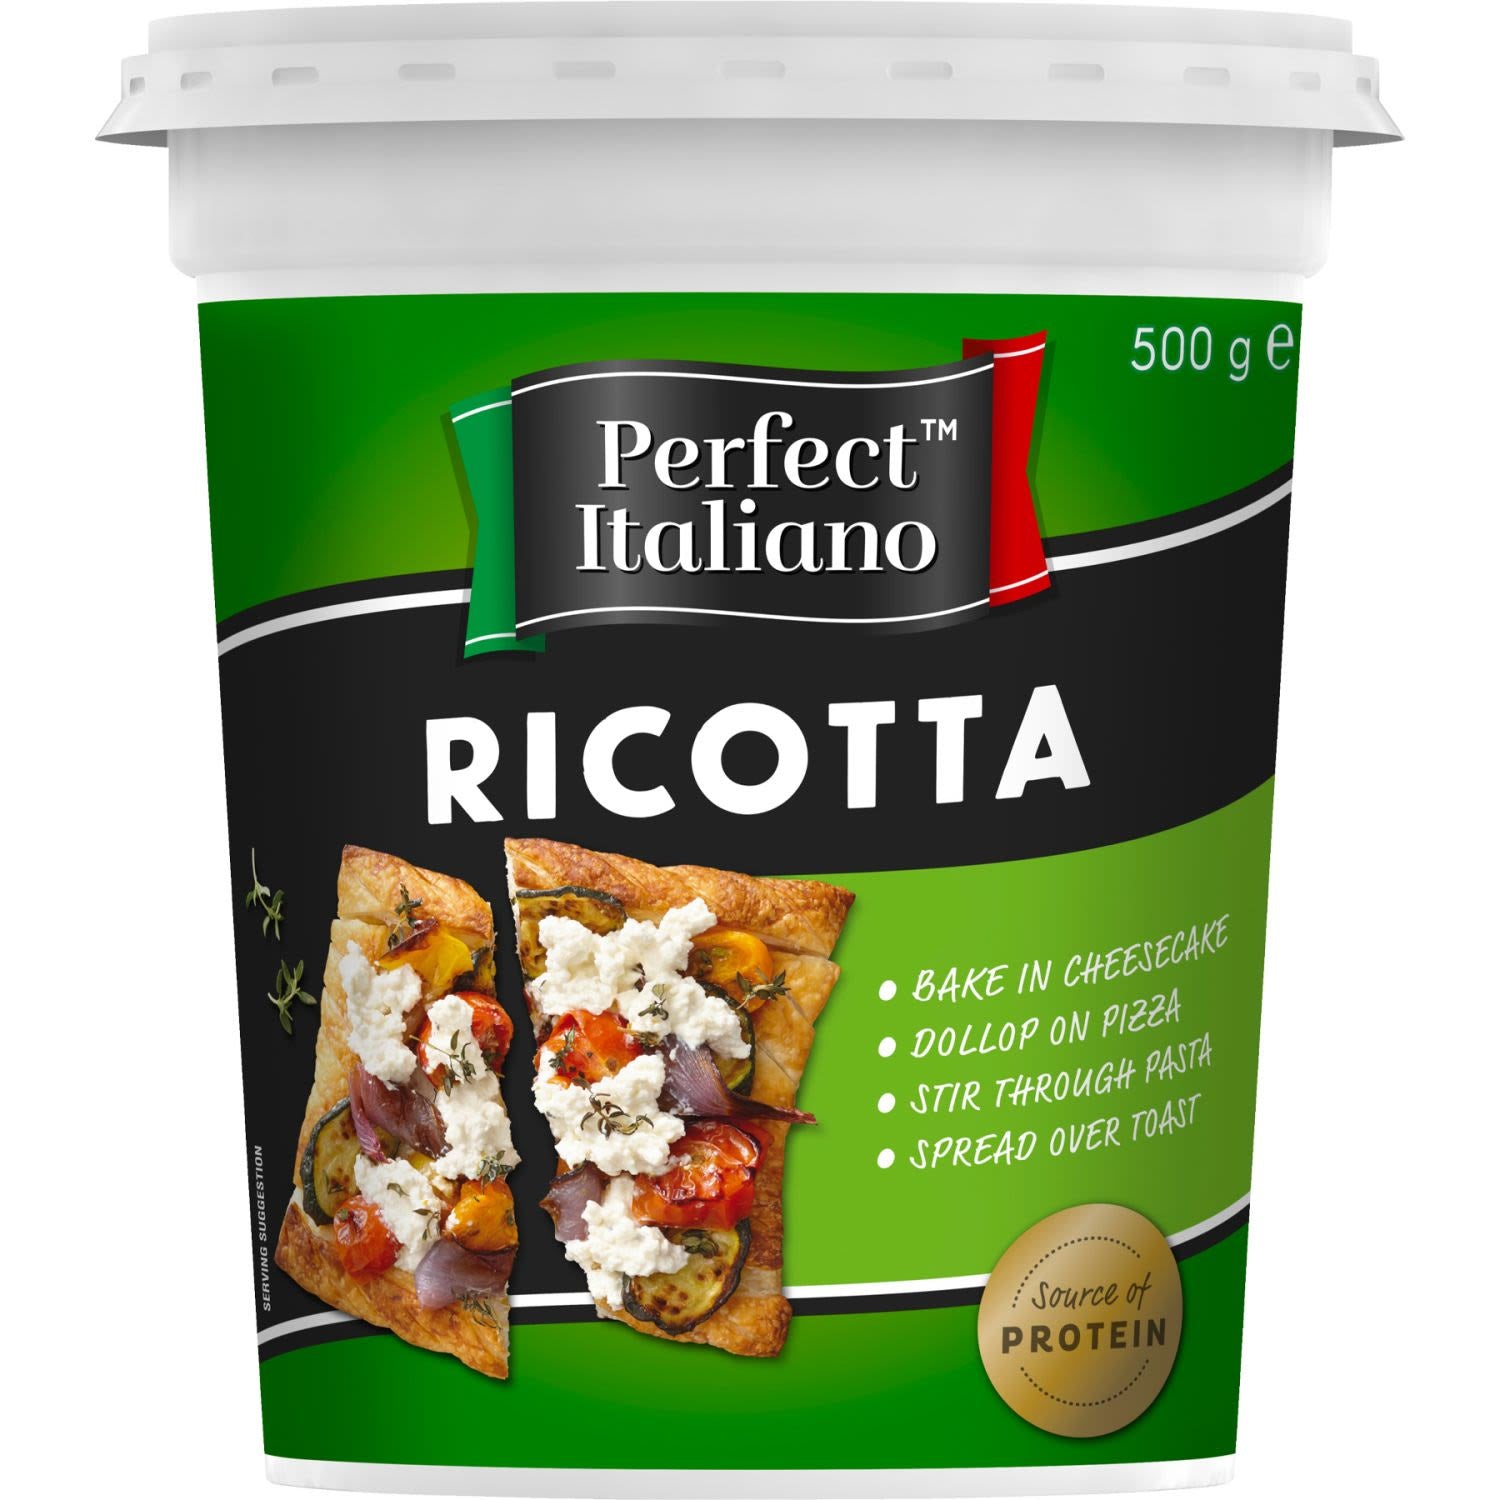 Perfect Italiano Ricotta 500g